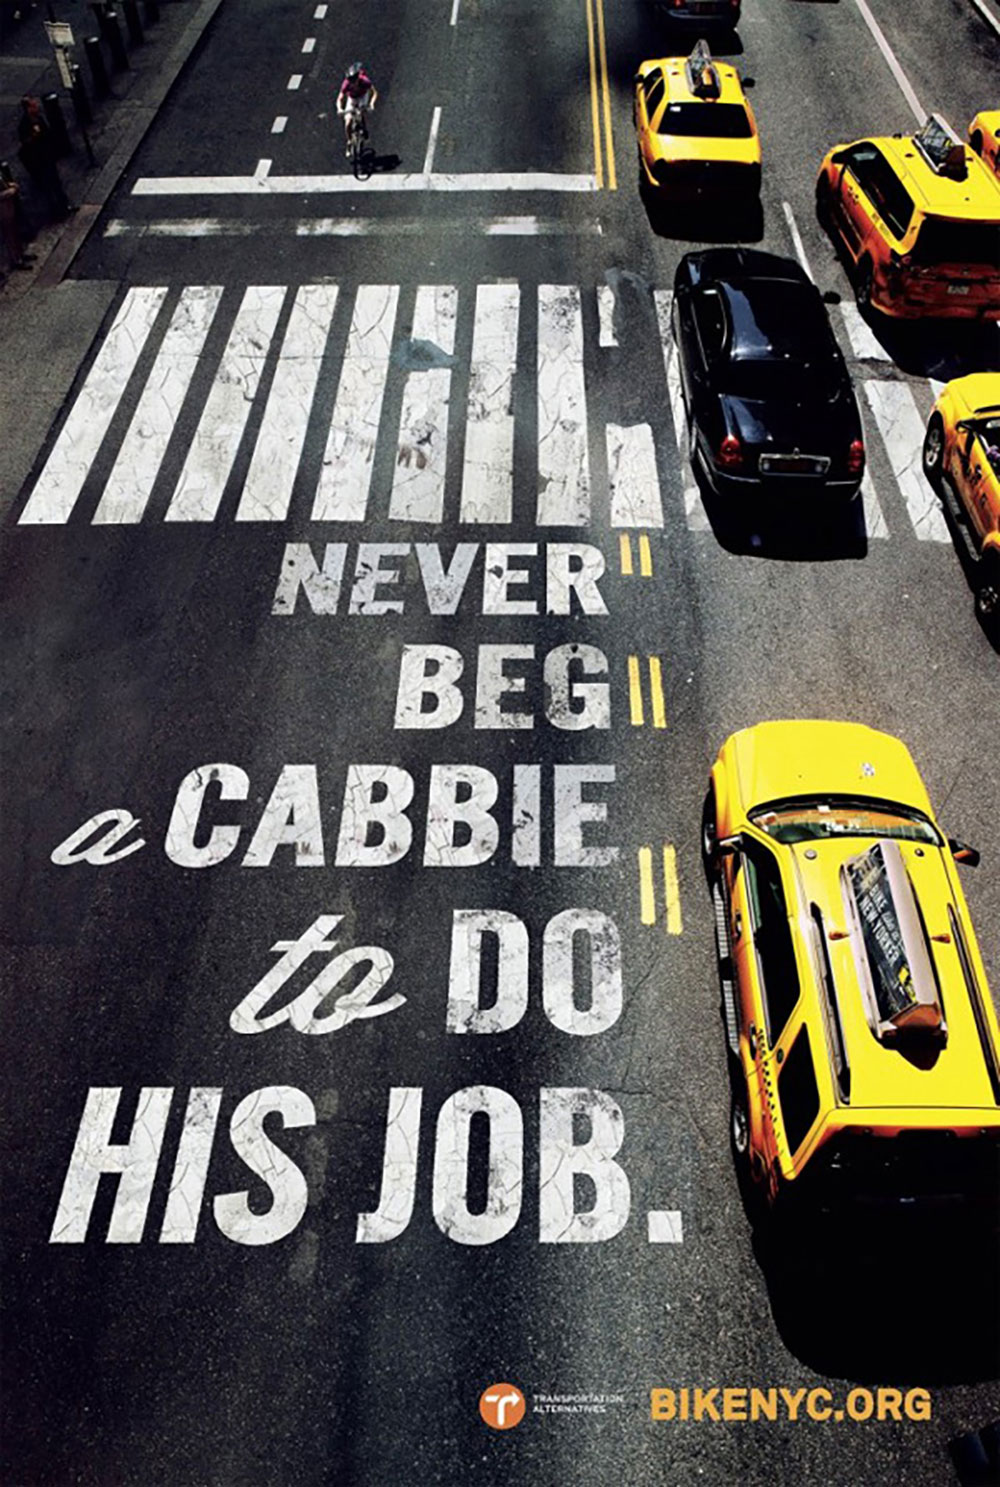 Campagne publicitaire new-yorkaise pour la promotion du vélo urbain